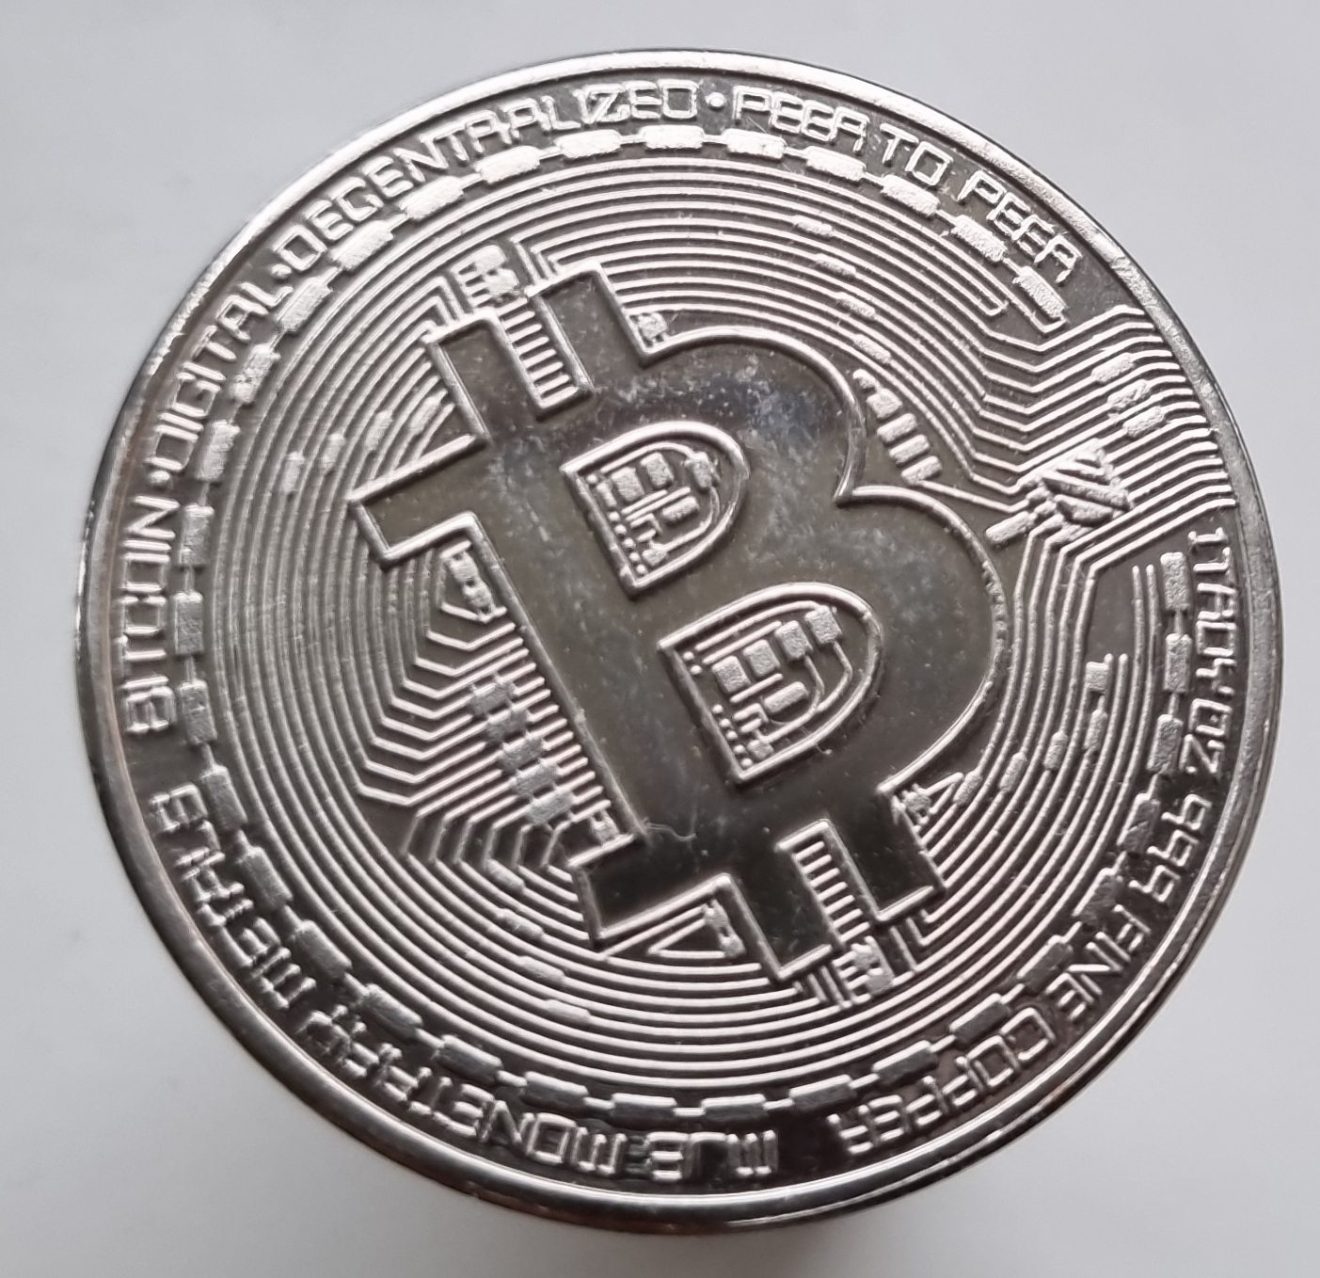 Bitcoin aankopen door bedrijven (Joost van Buuren)